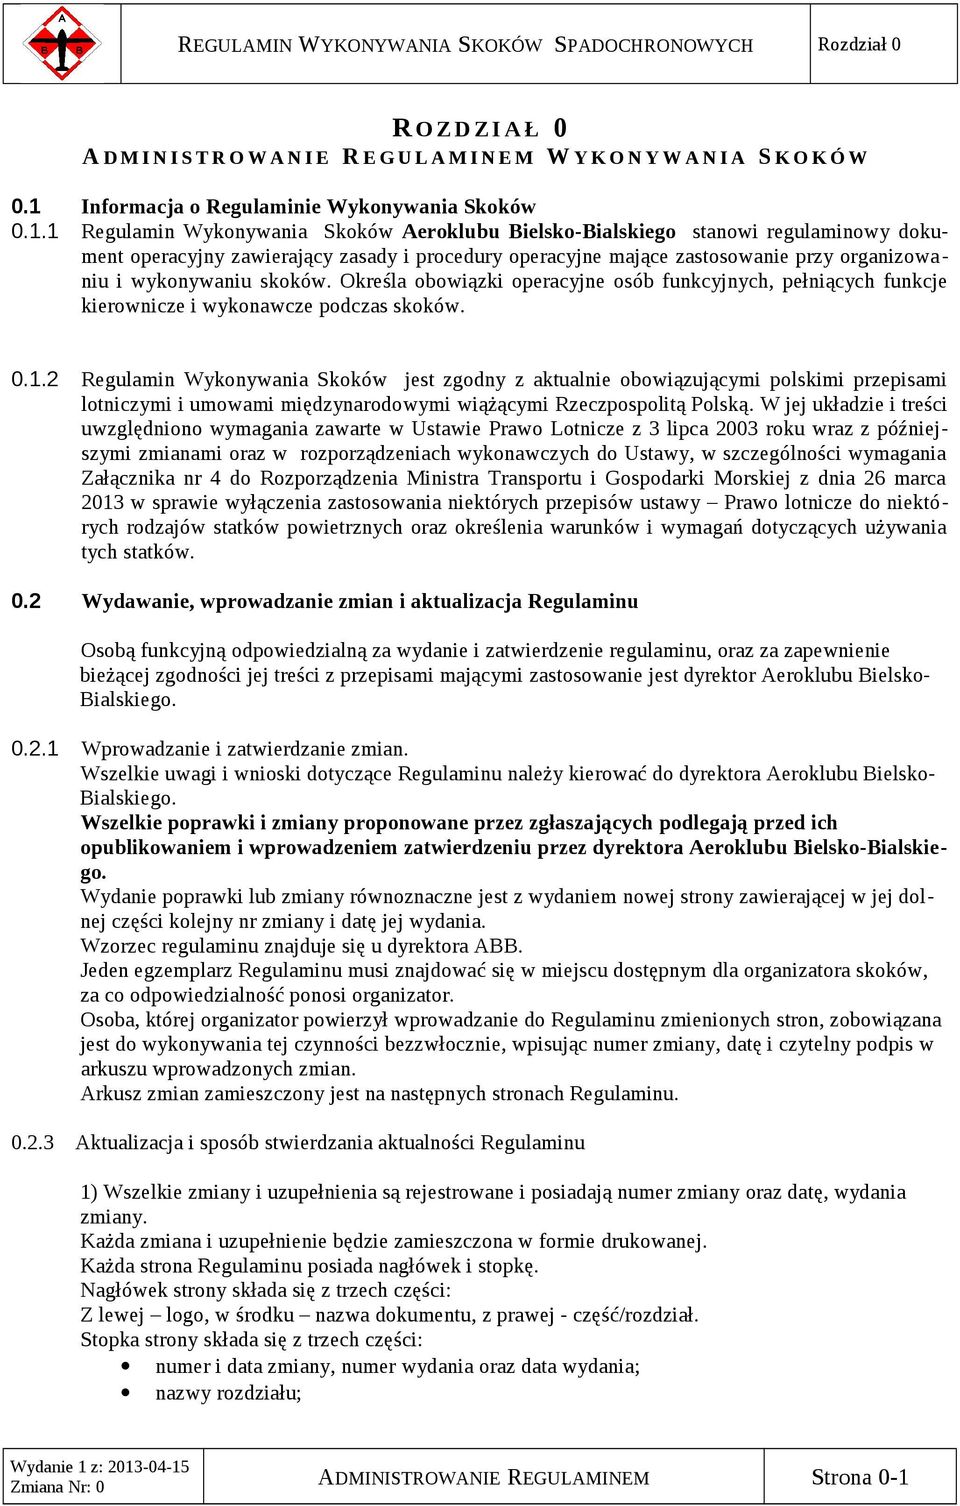 1 Regulamin Wykonywania Skoków Aeroklubu Bielsko-Bialskiego stanowi regulaminowy dokument operacyjny zawierający zasady i procedury operacyjne mające zastosowanie przy organizowaniu i wykonywaniu